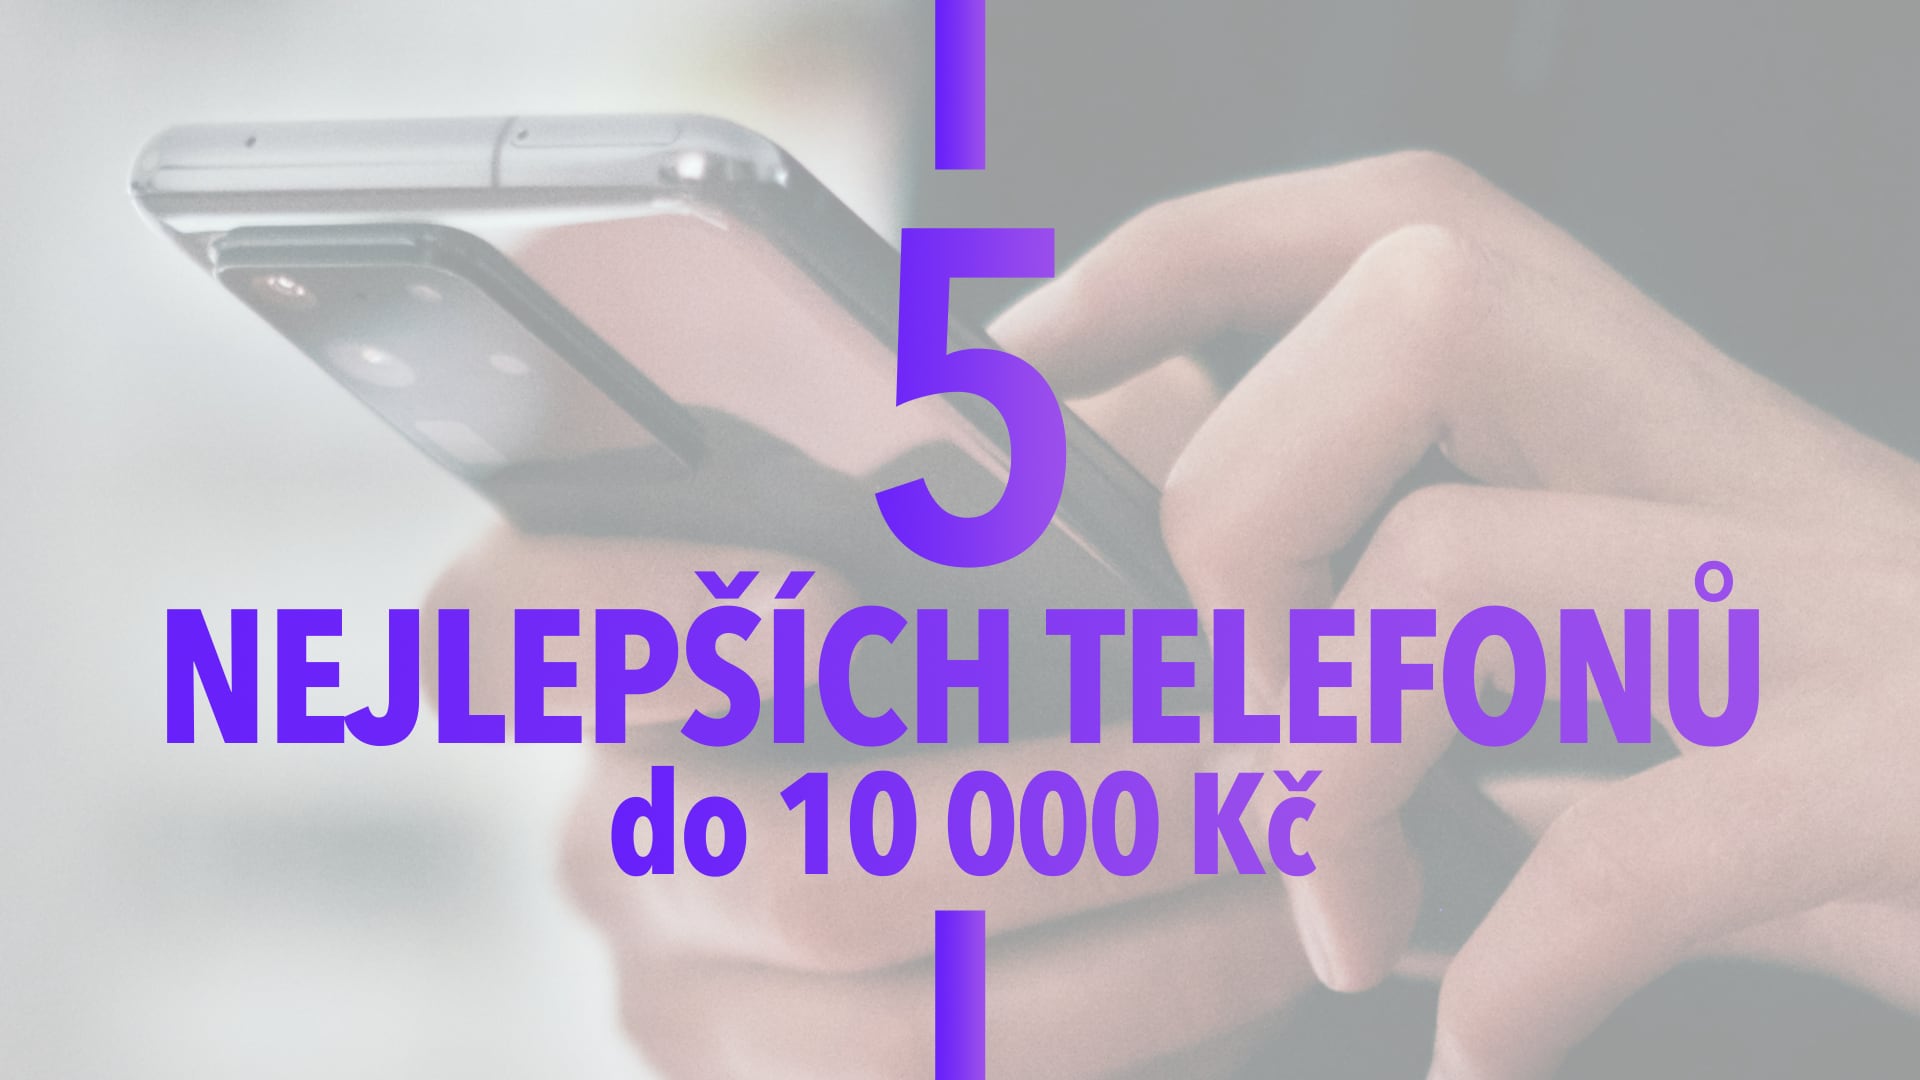 Vybrali jsme 5 nejlepších mobilních telefonů do 10 000 Kč